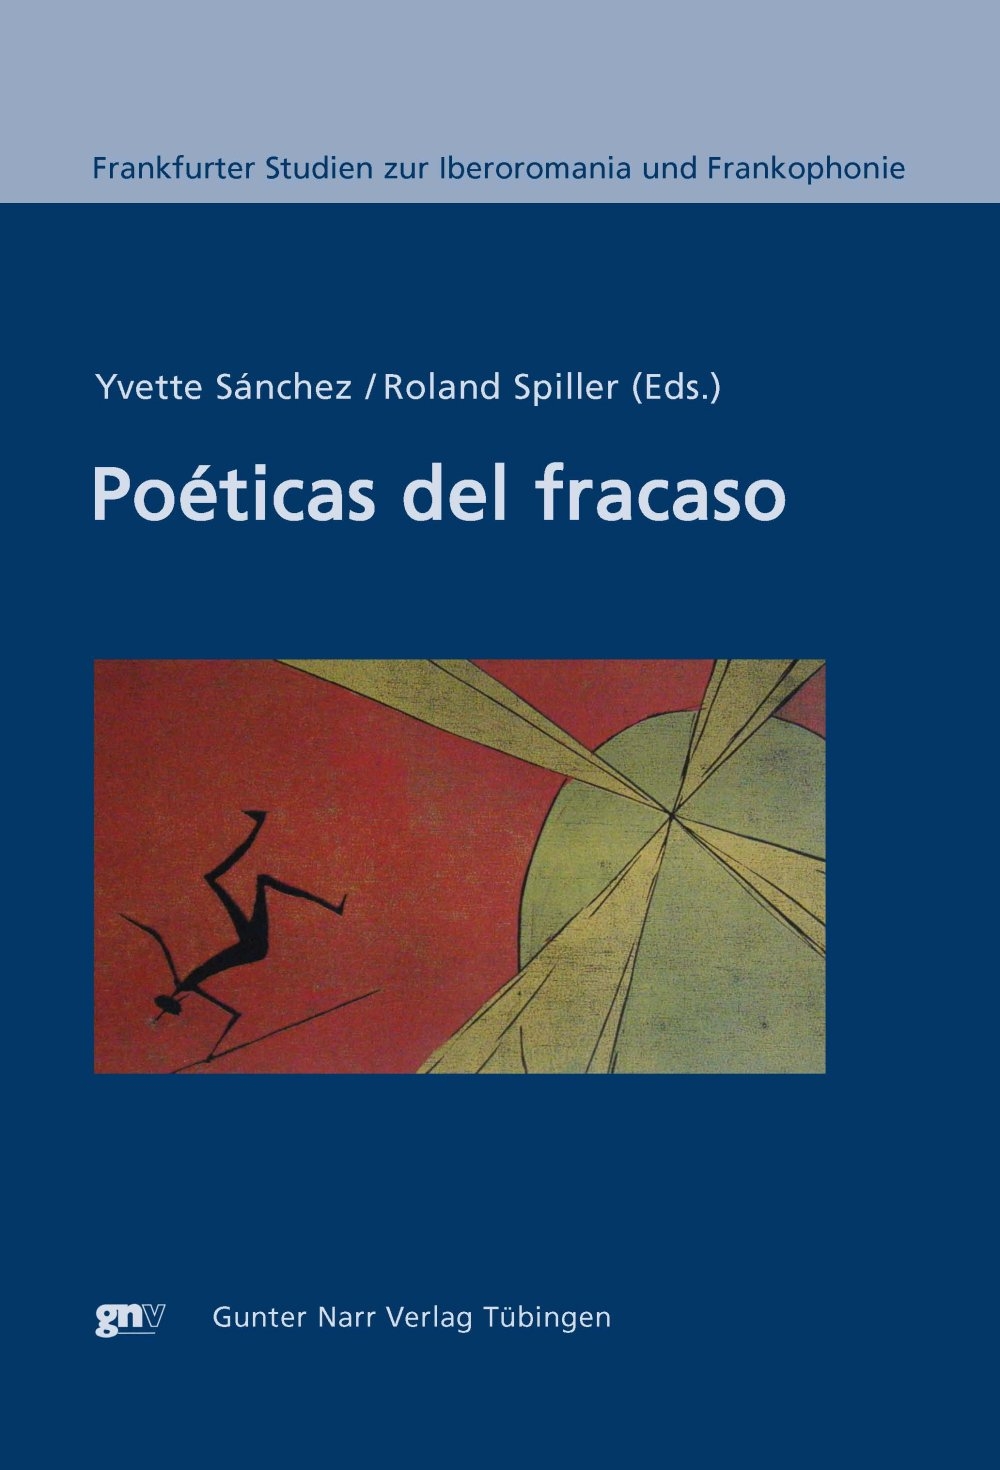 Poéticas del fracaso, Yvette Sánchez / Roland Spiller (Eds.)